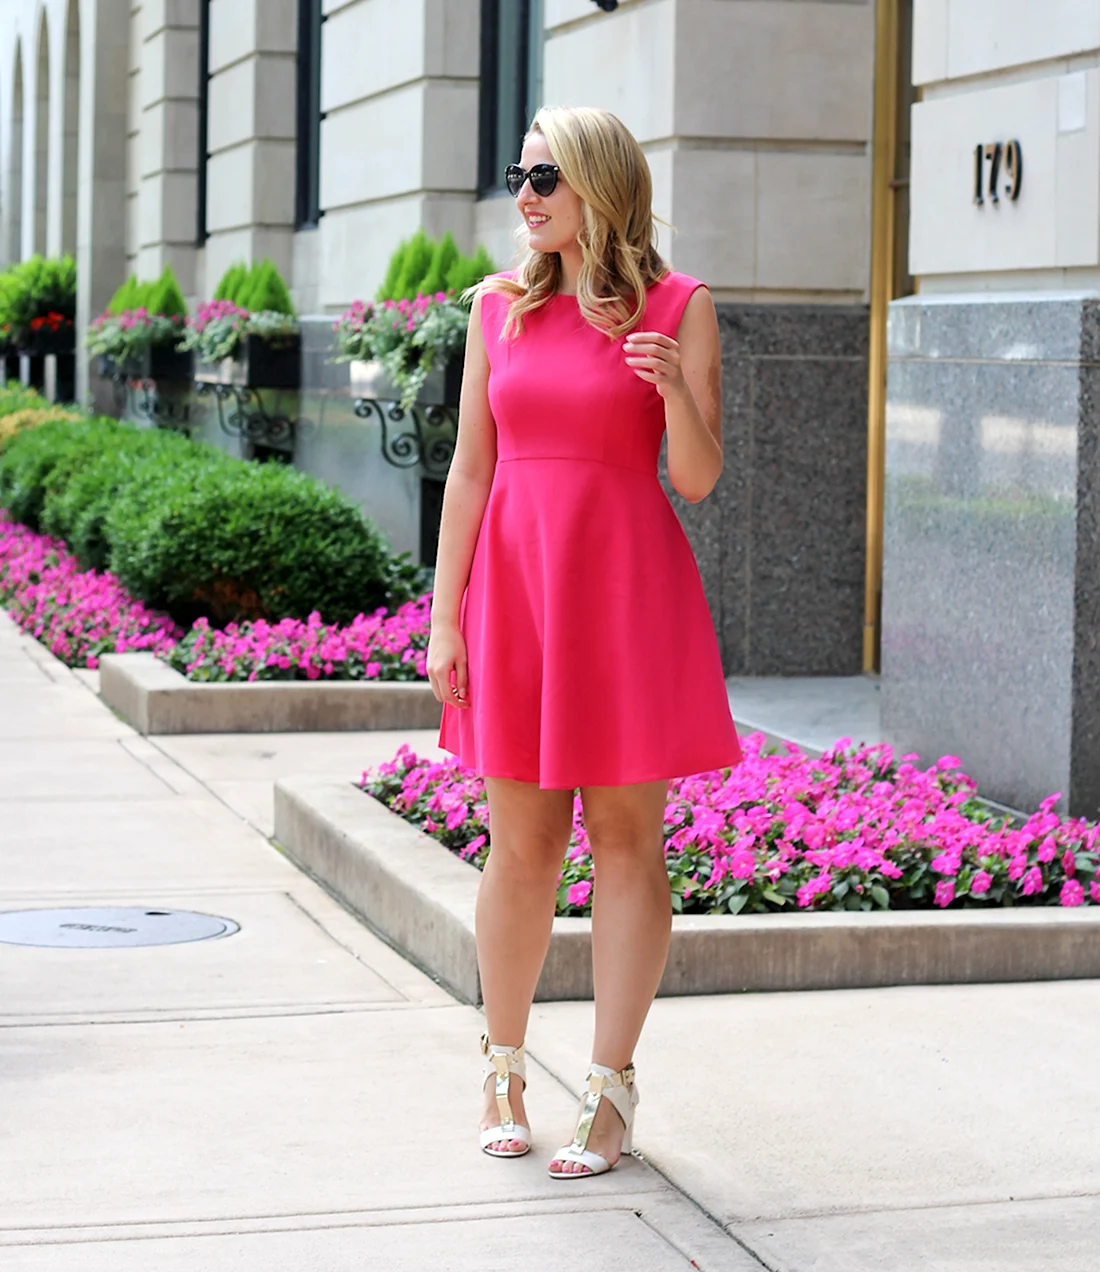 Обувь под розовое платье